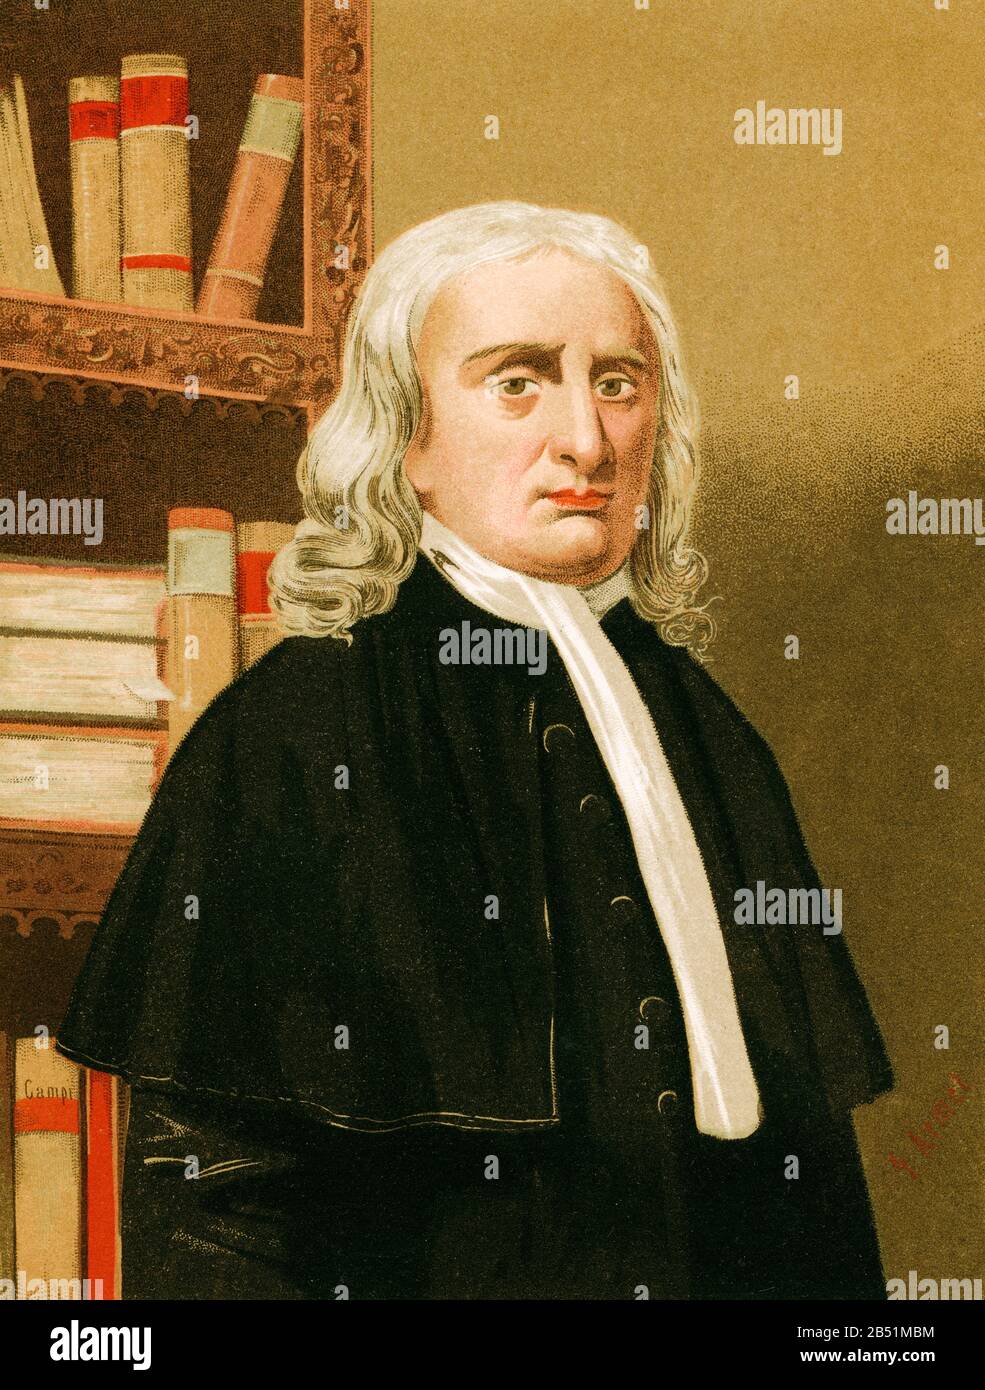 Portrait de lithographie de couleur ancienne. Isaac Newton ( 1642-1727) physicien anglais, théologien, inventeur, alchimiste et mathématicien. Il est l'auteur de th Banque D'Images